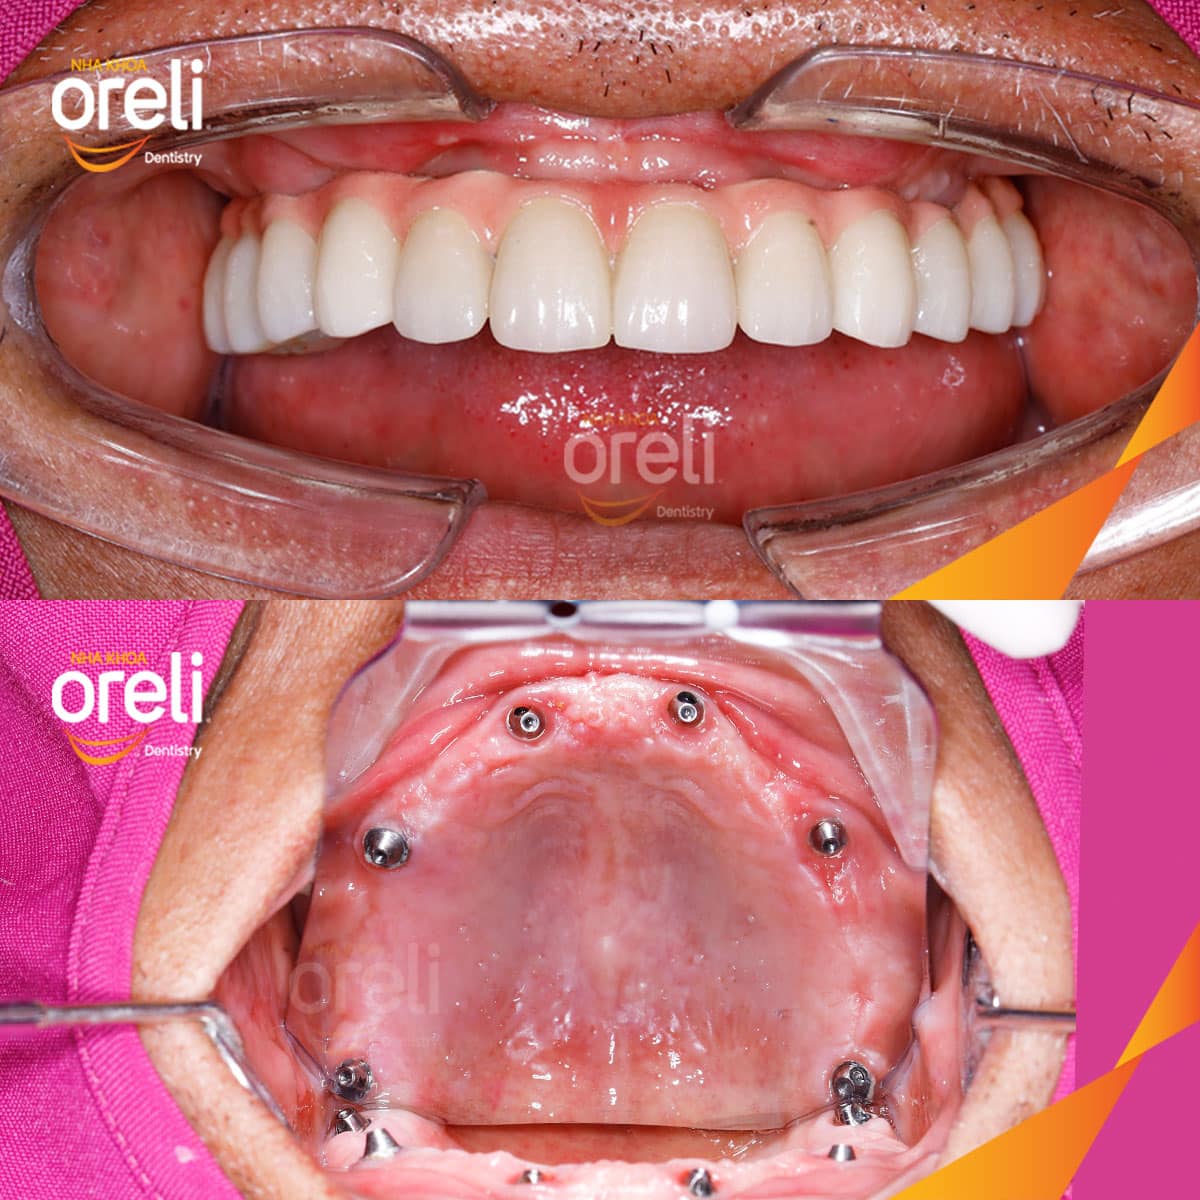 phục hình răng Oreli